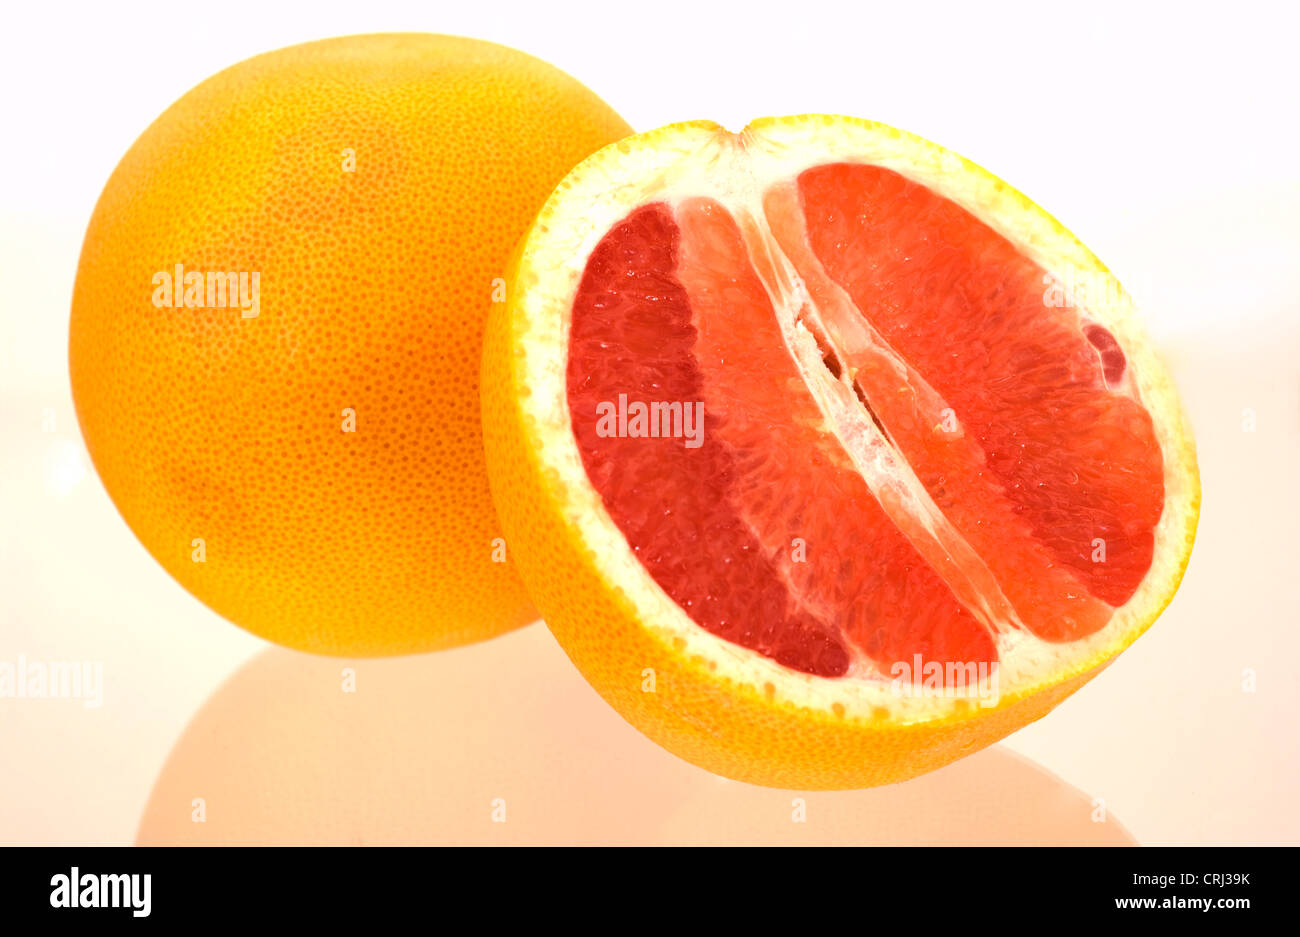 Antioxidant Lycopene Citrus Citrus Paradisi Food Foodstuff Fruit Grapefruit Half Halves Healthy Healthy Diet Low Calorie Nutrien Stock Photo